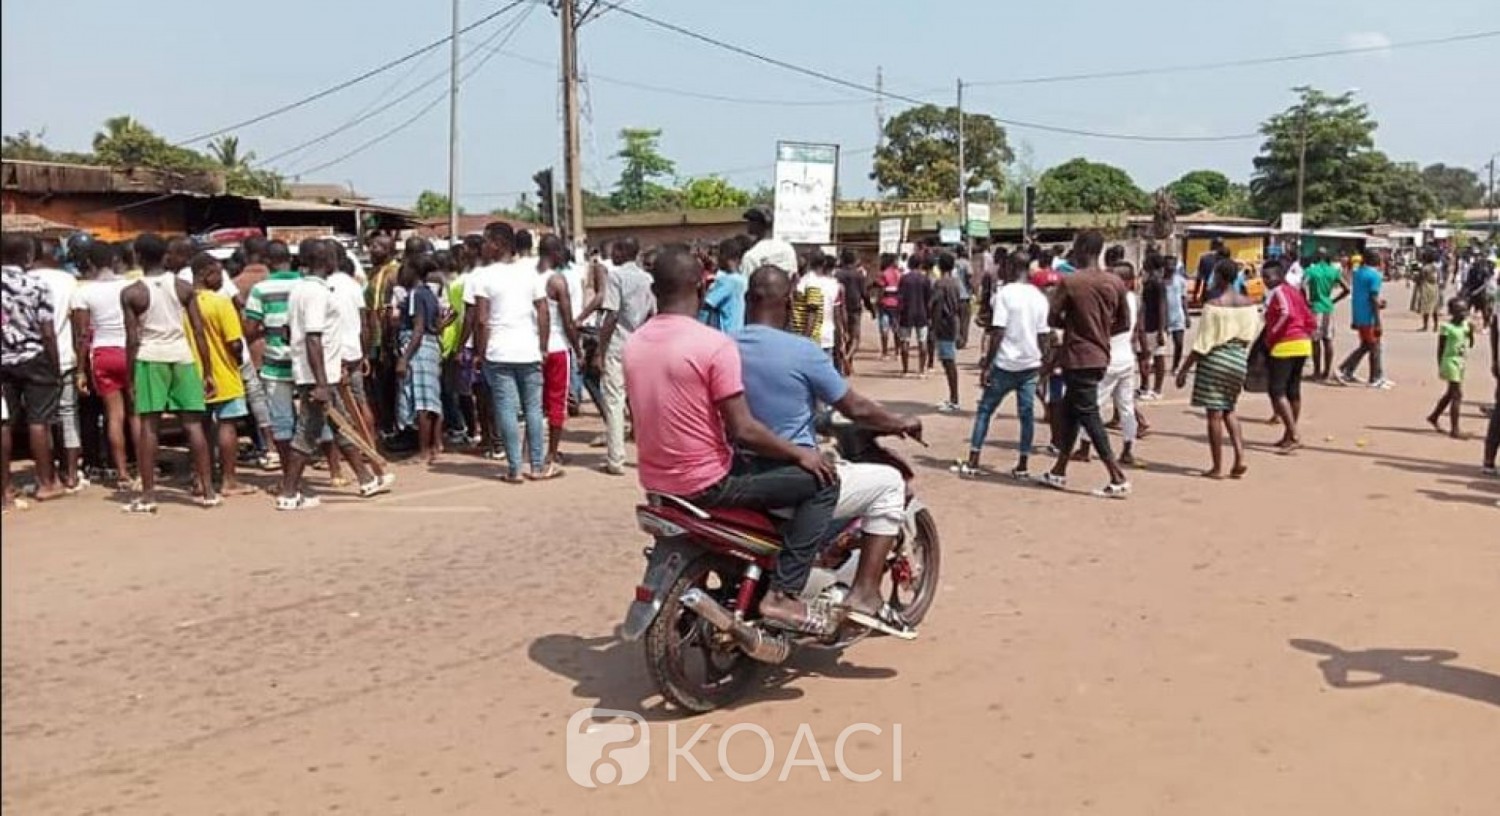 Côte d'Ivoire: Bagarre rangée entre groupes de jeunes de deux communautés, Vagondo précise «aucune perte en vie humaine » et met en garde